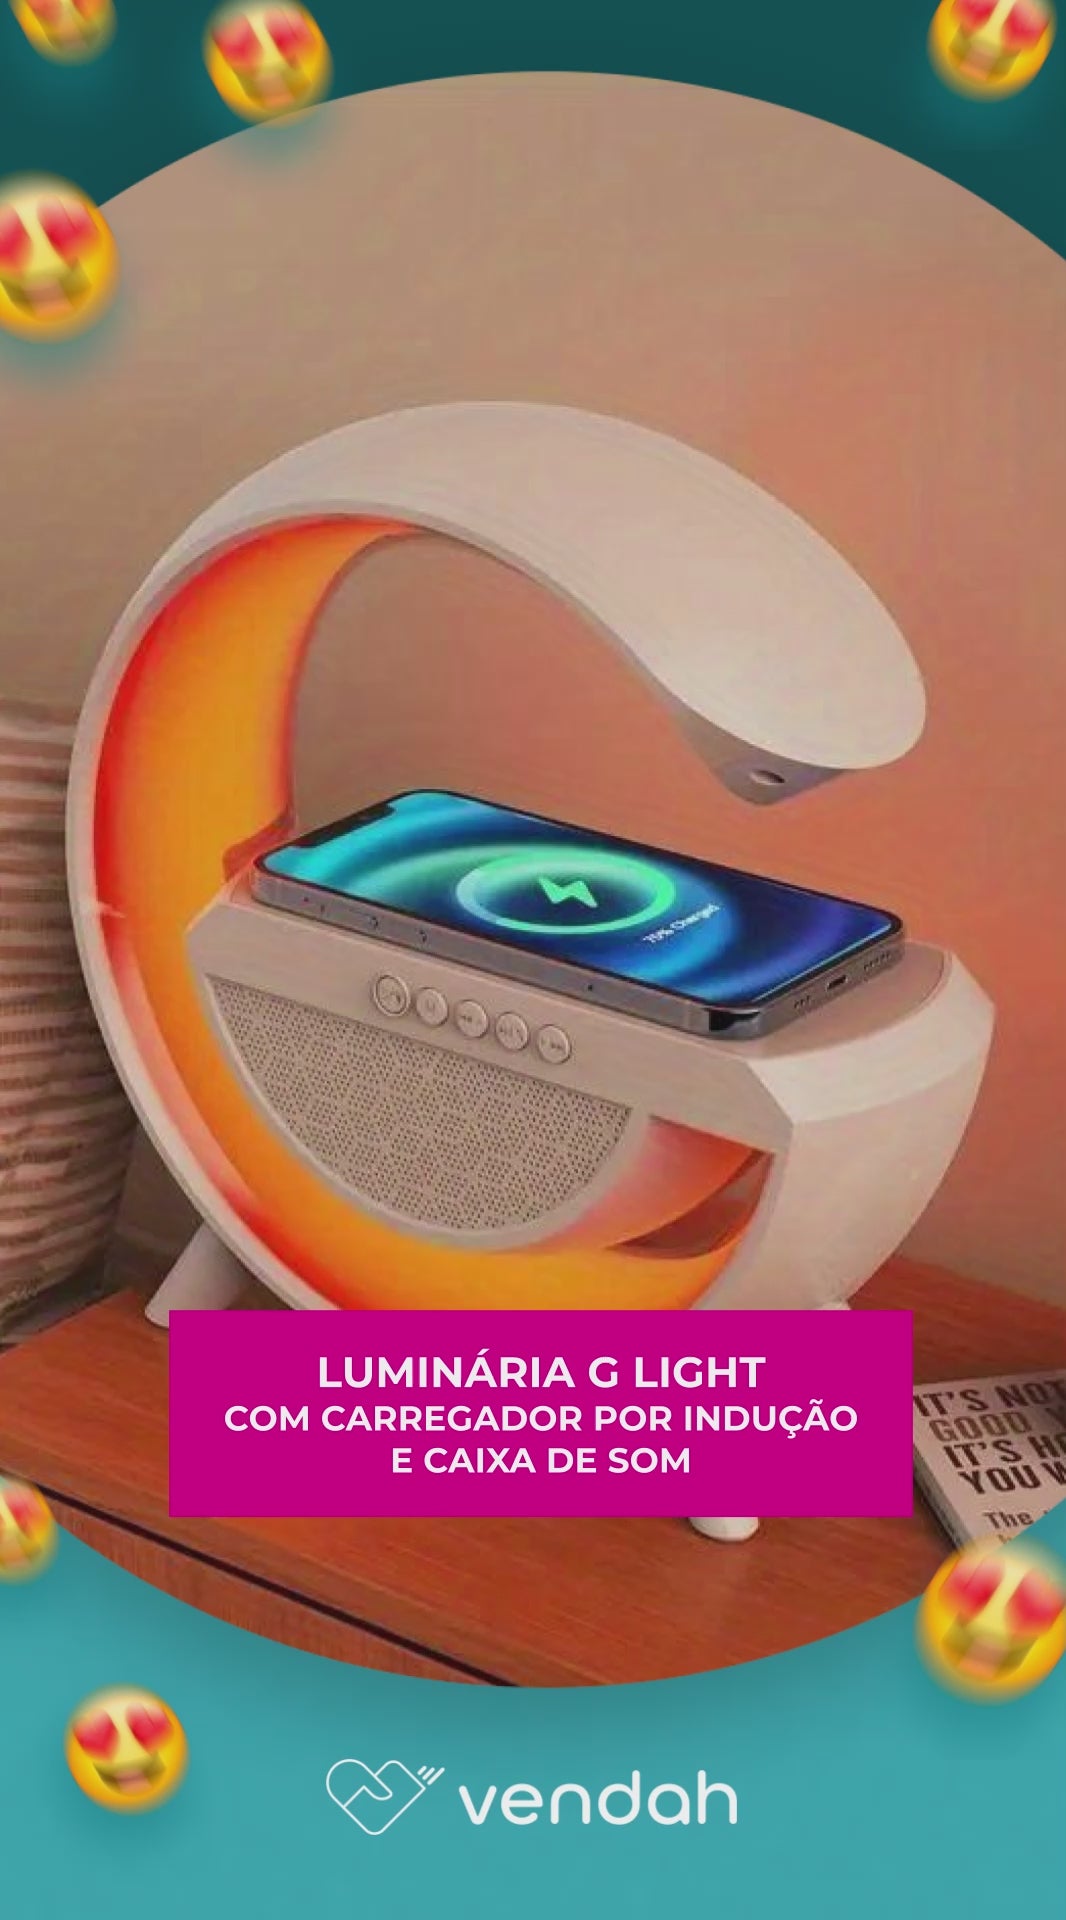 Luminária G Light com Carregador por Indução e Caixa de som